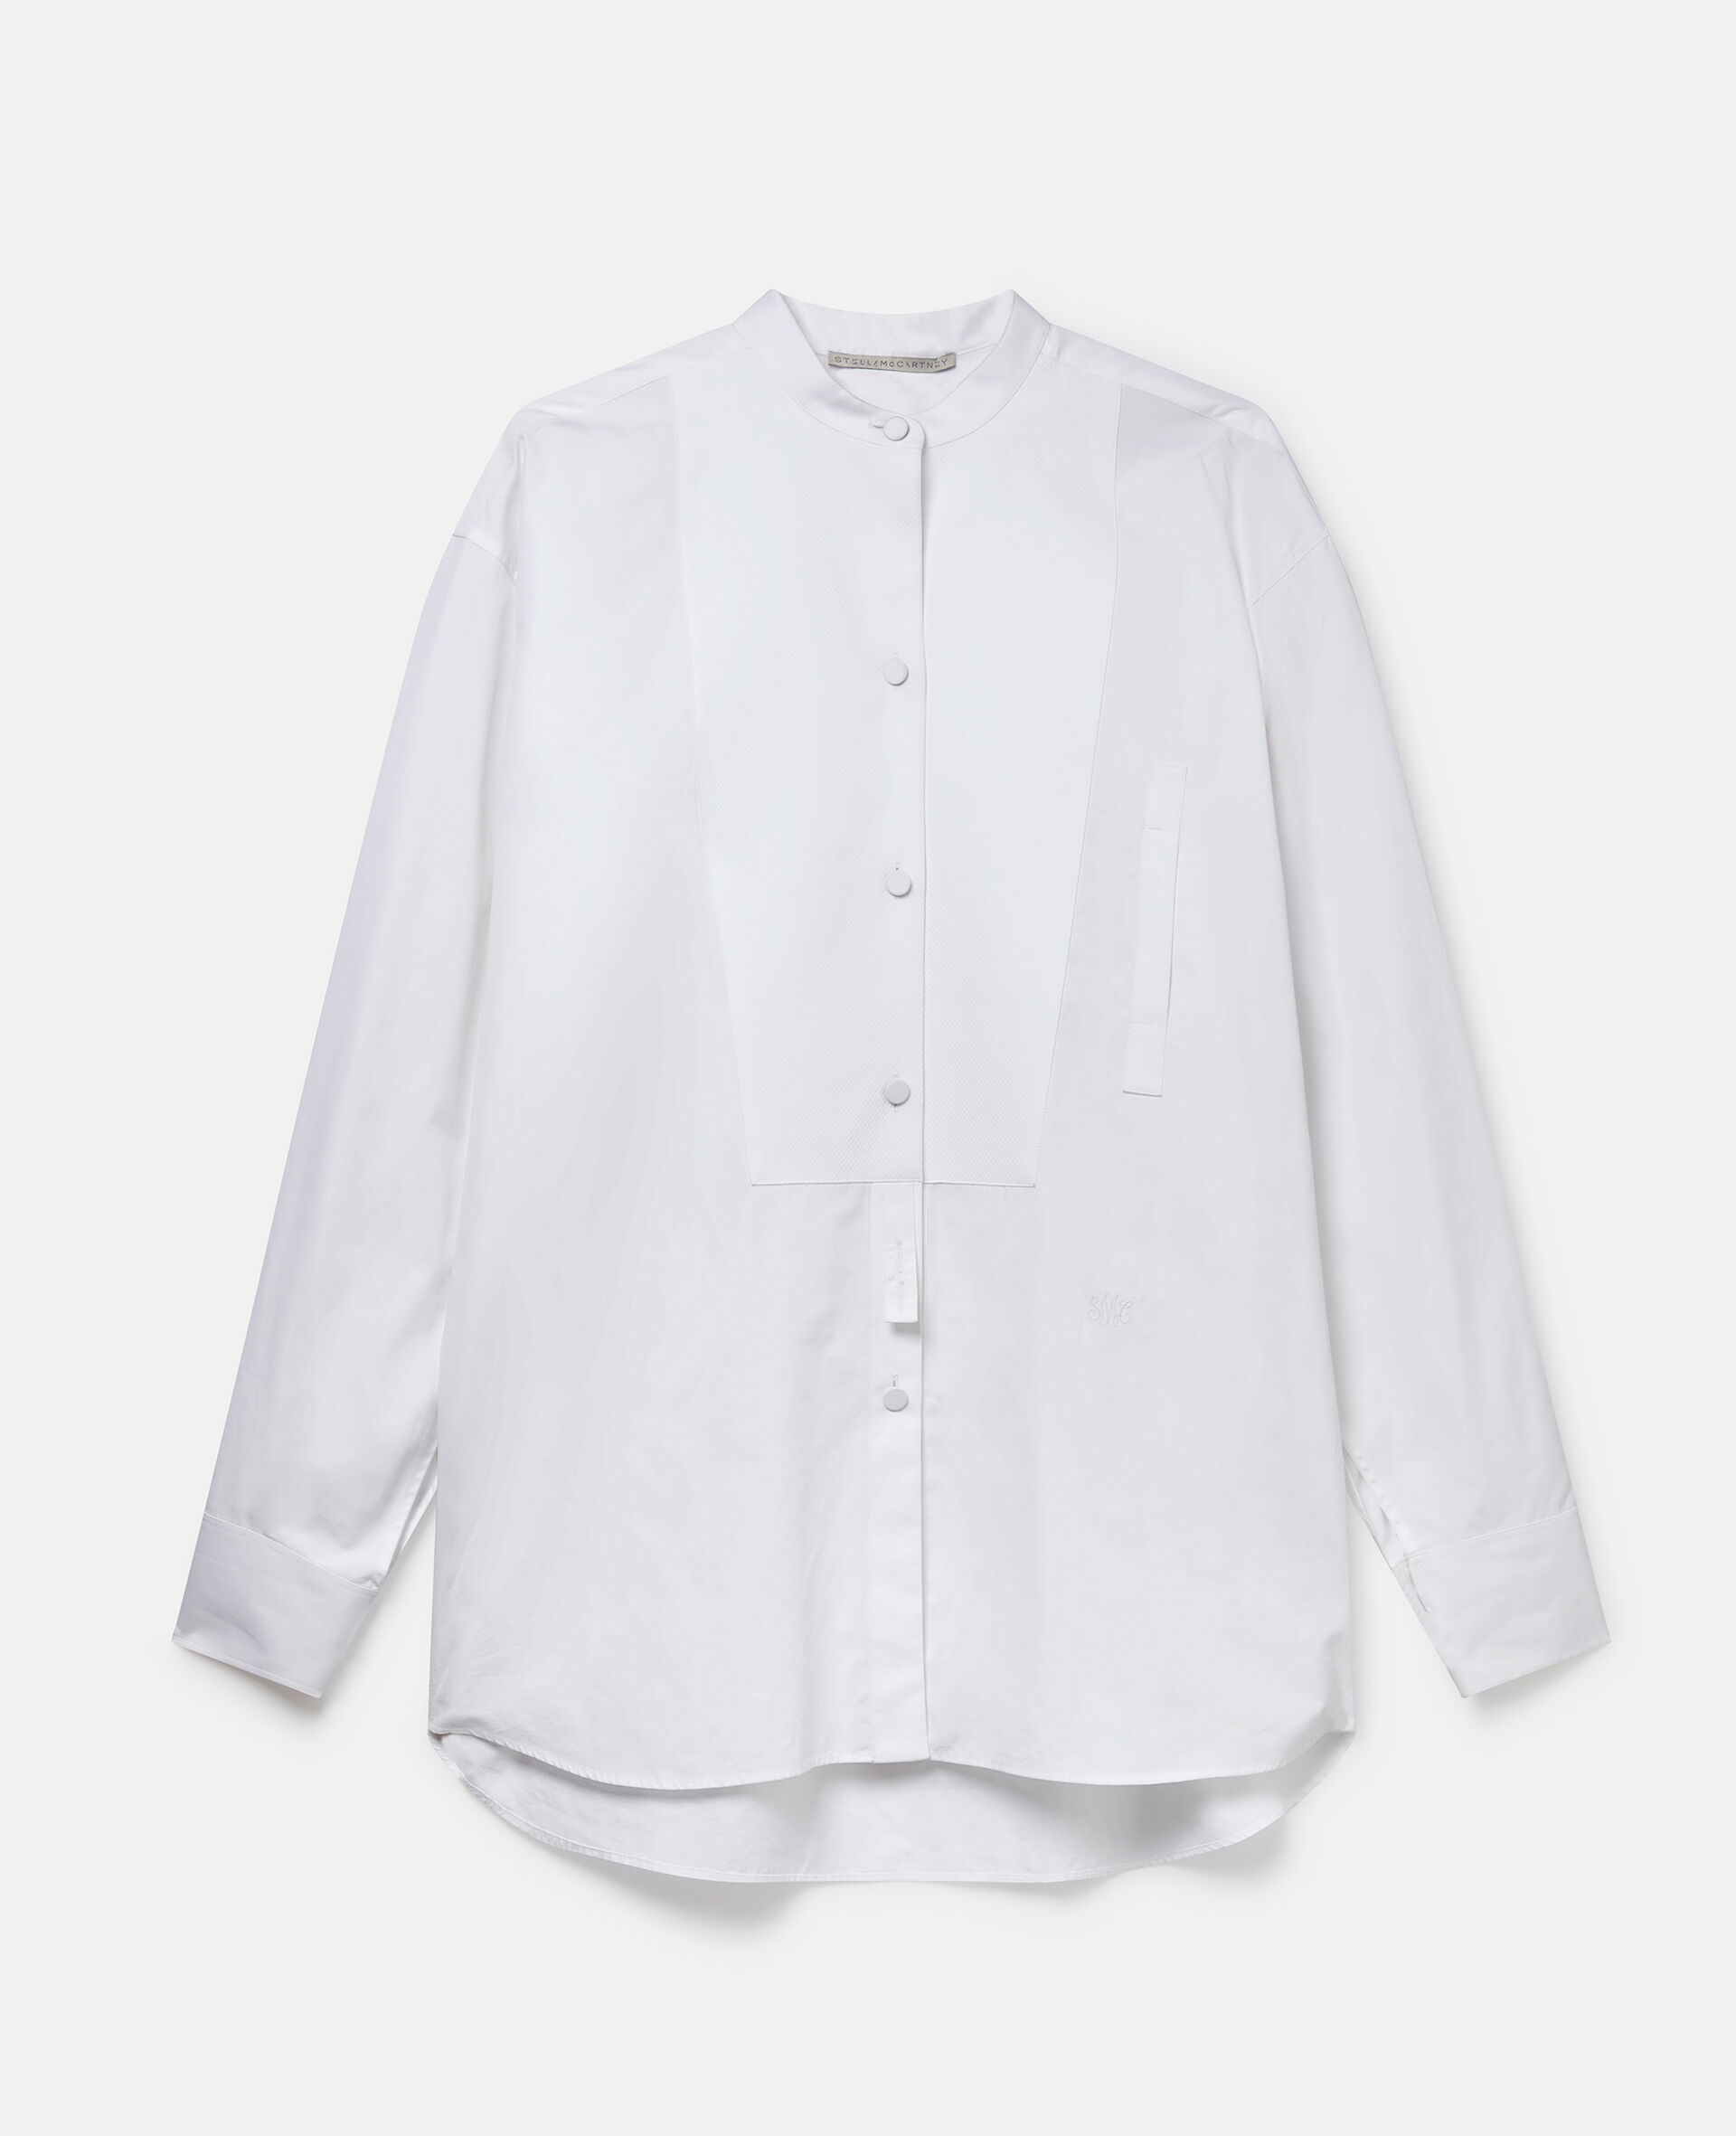 中式立领棉质礼服衬衫-白色-medium